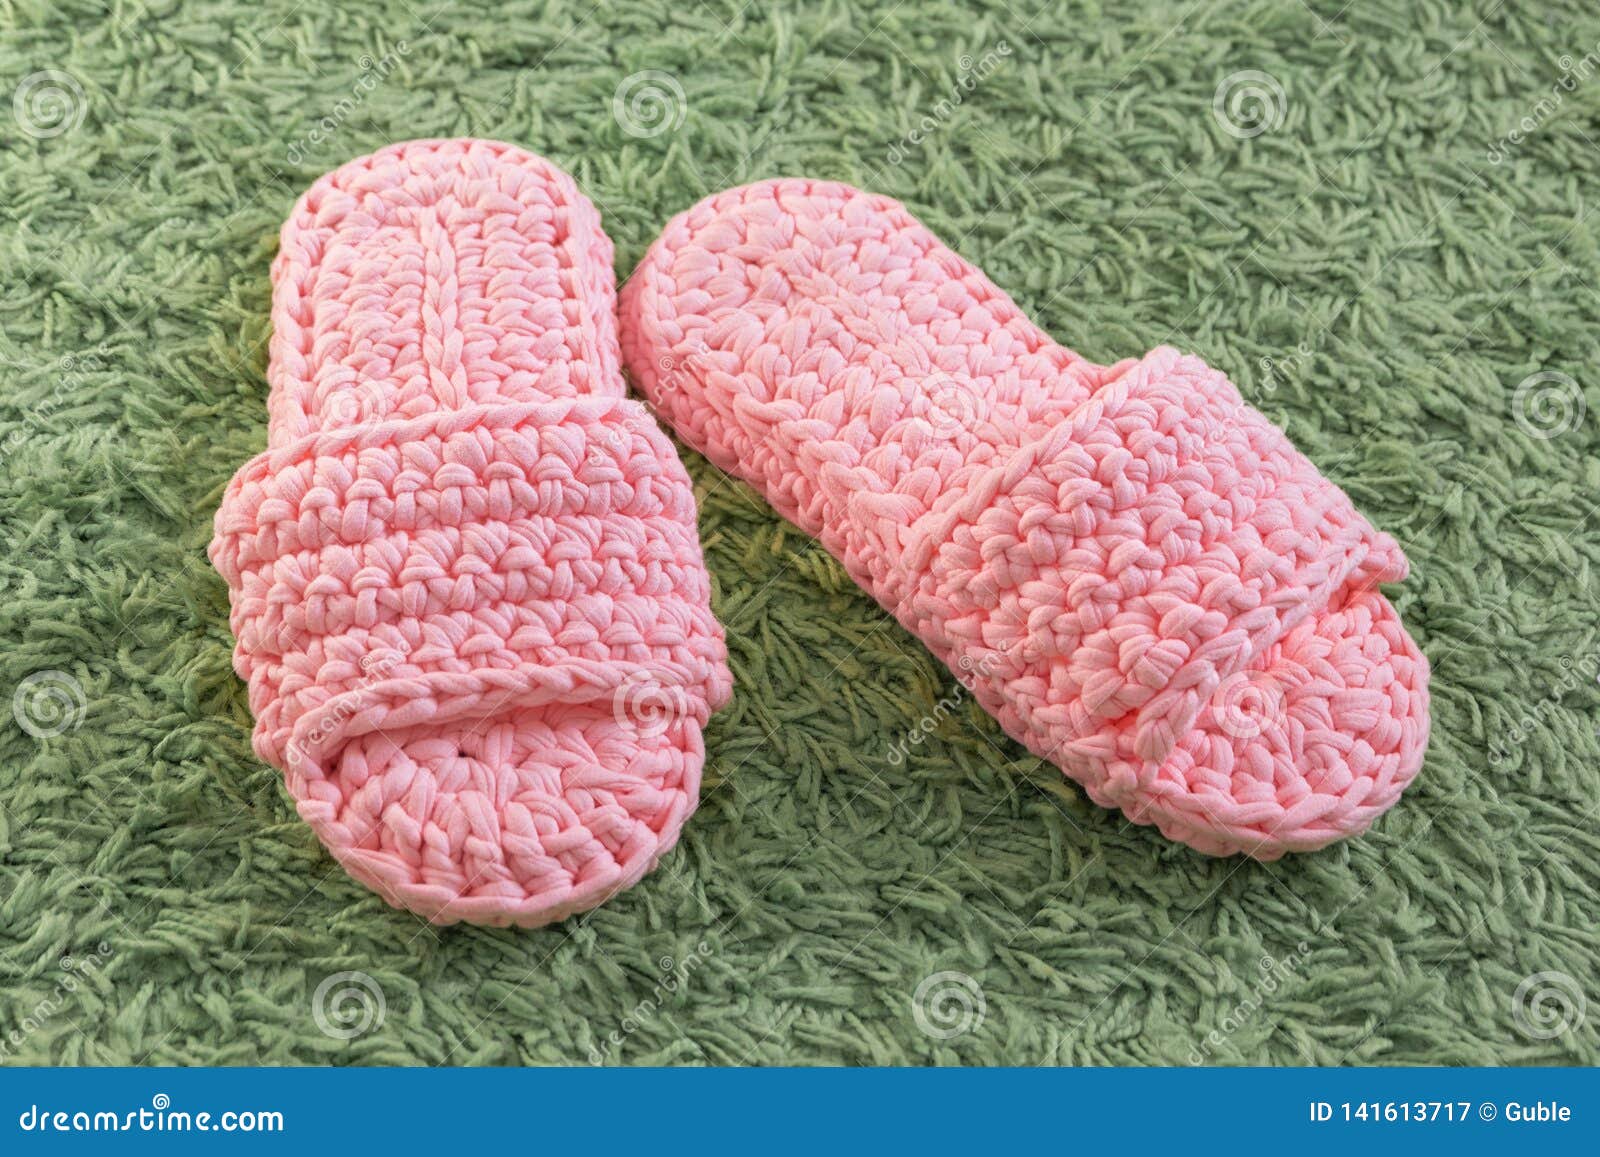 Homemade Knitted Bedroom Slippers on Fluffy Green Carpet Stock Image ...